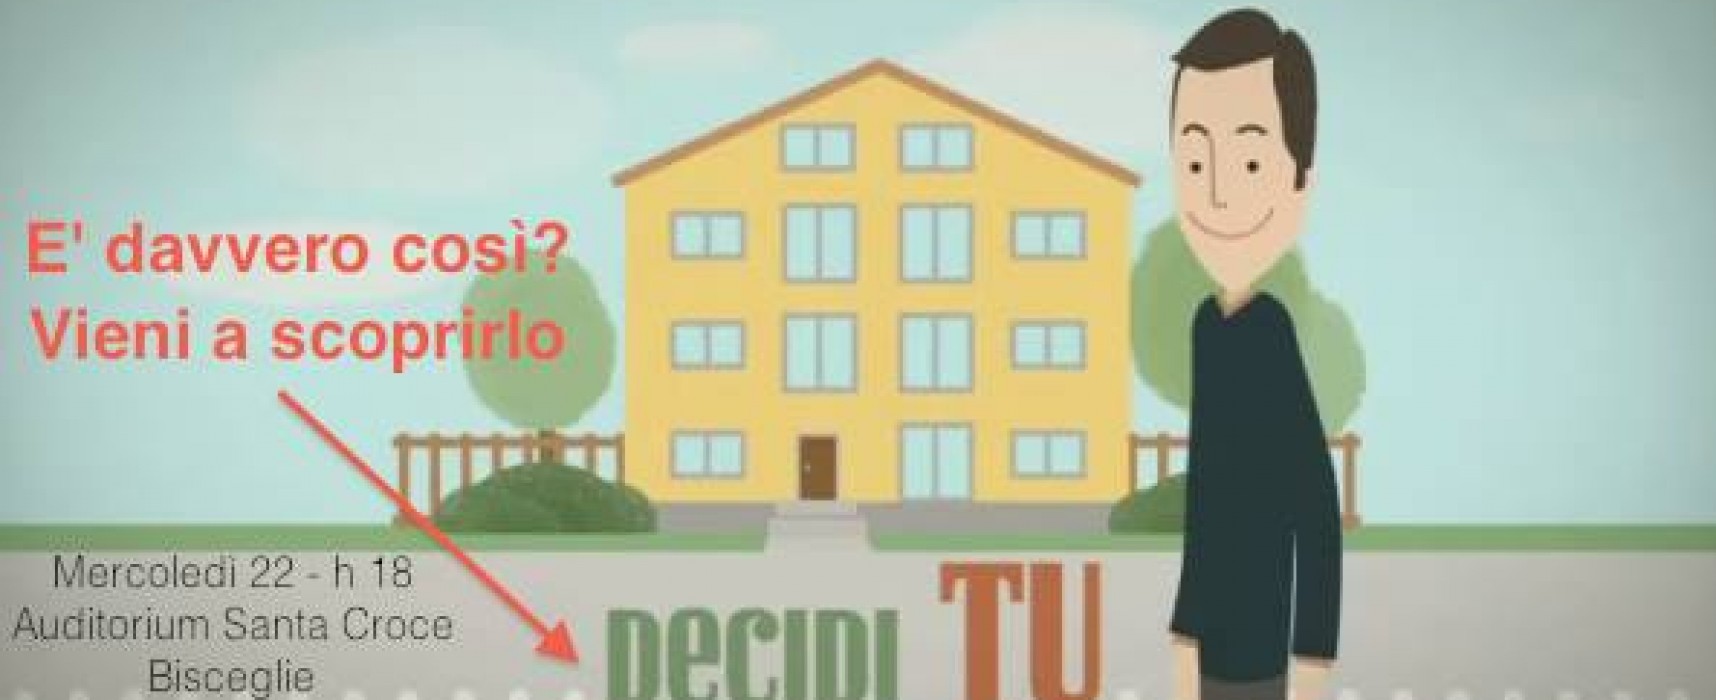 Seminario “Mi rifaccio casa”, le novità introdotte dal decreto “Sblocca Italia” spiegate dai tecnici